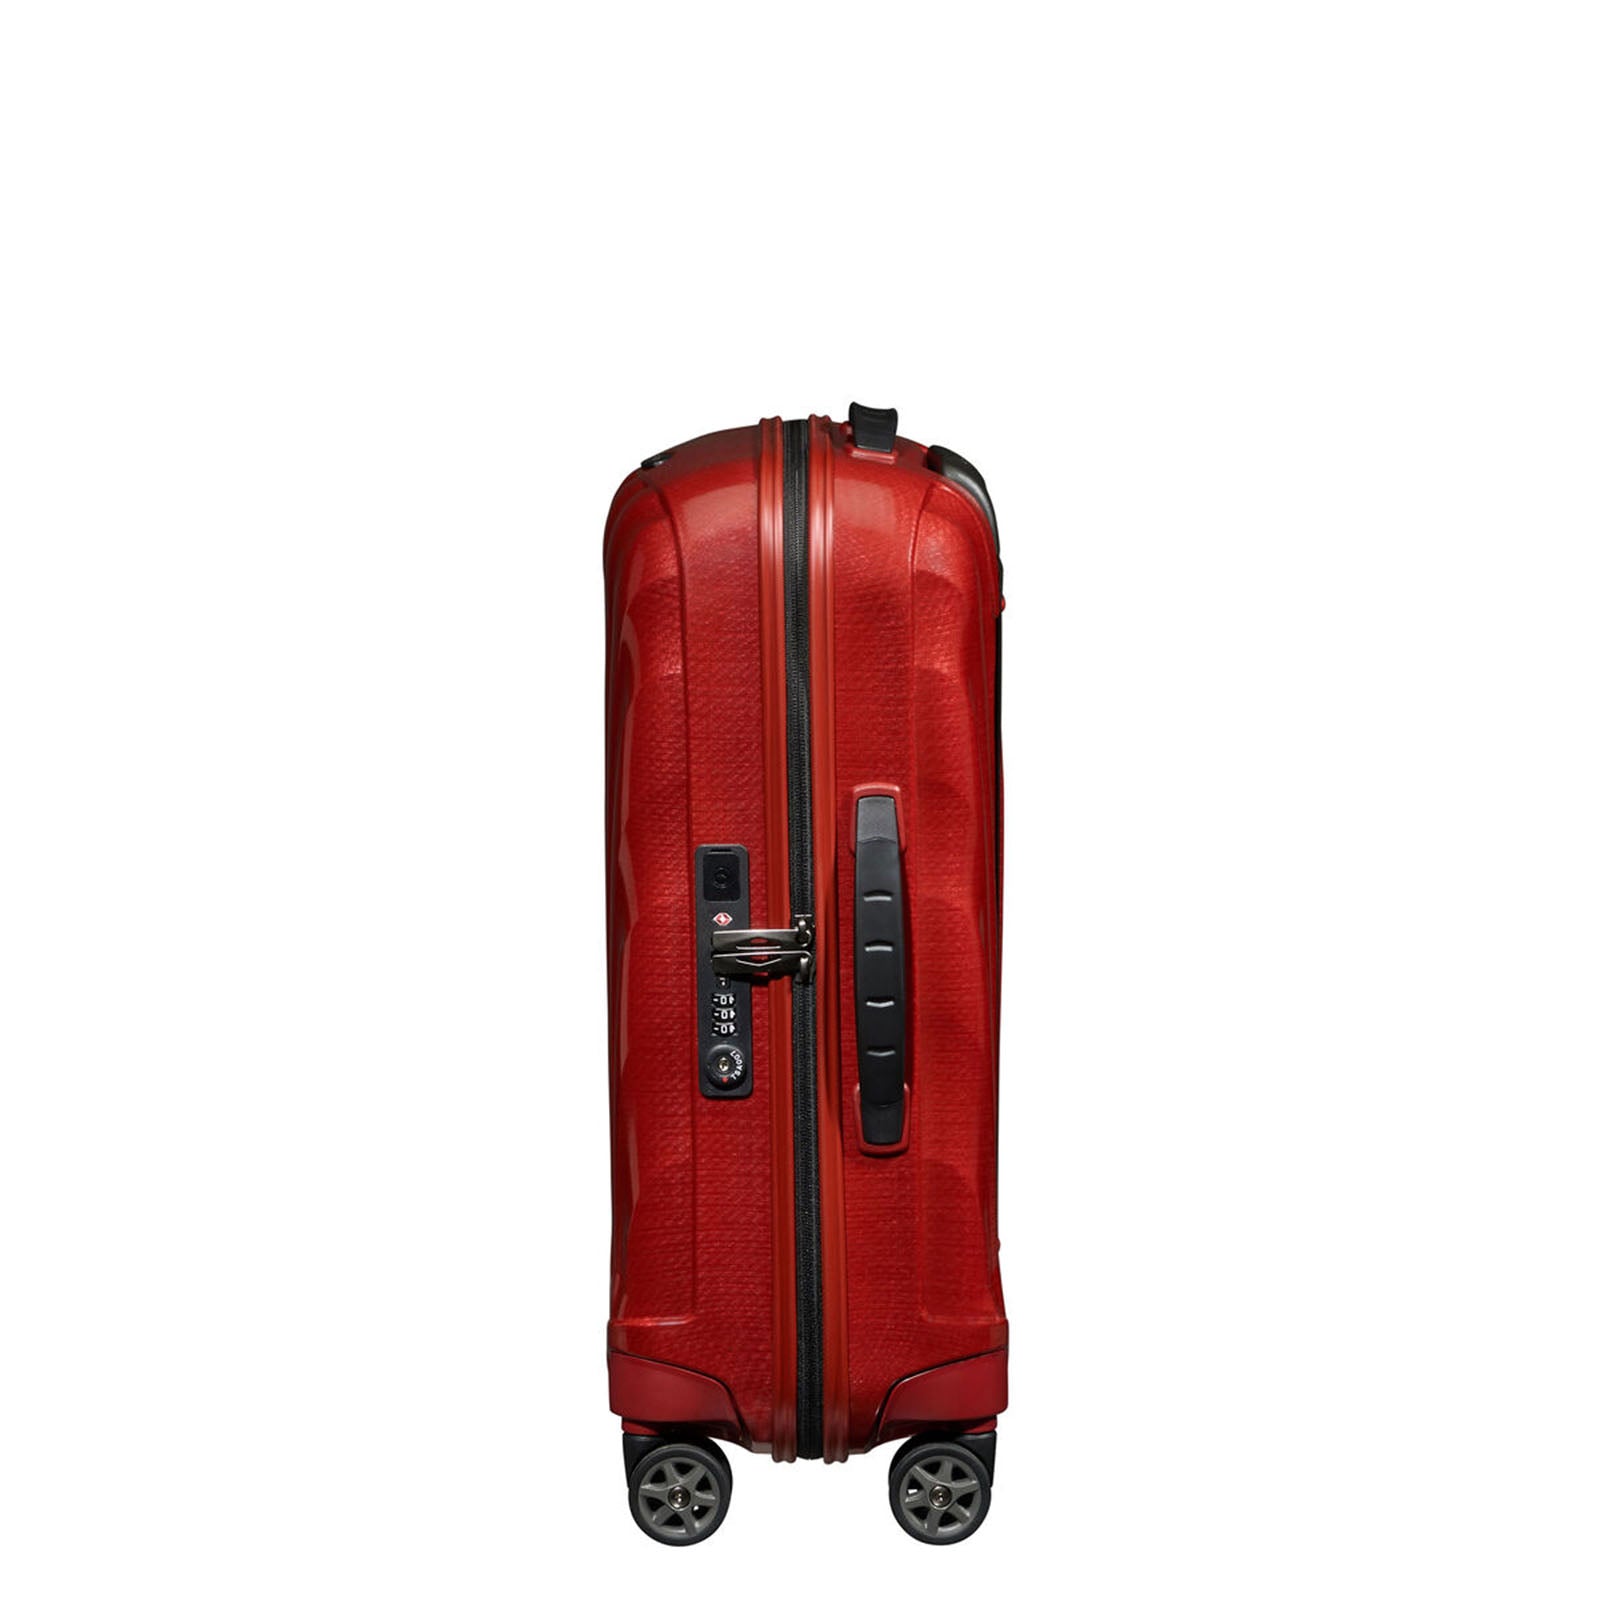 Samsonite-C-Lite-55cm-Suitcase-Chili-Red-Lock